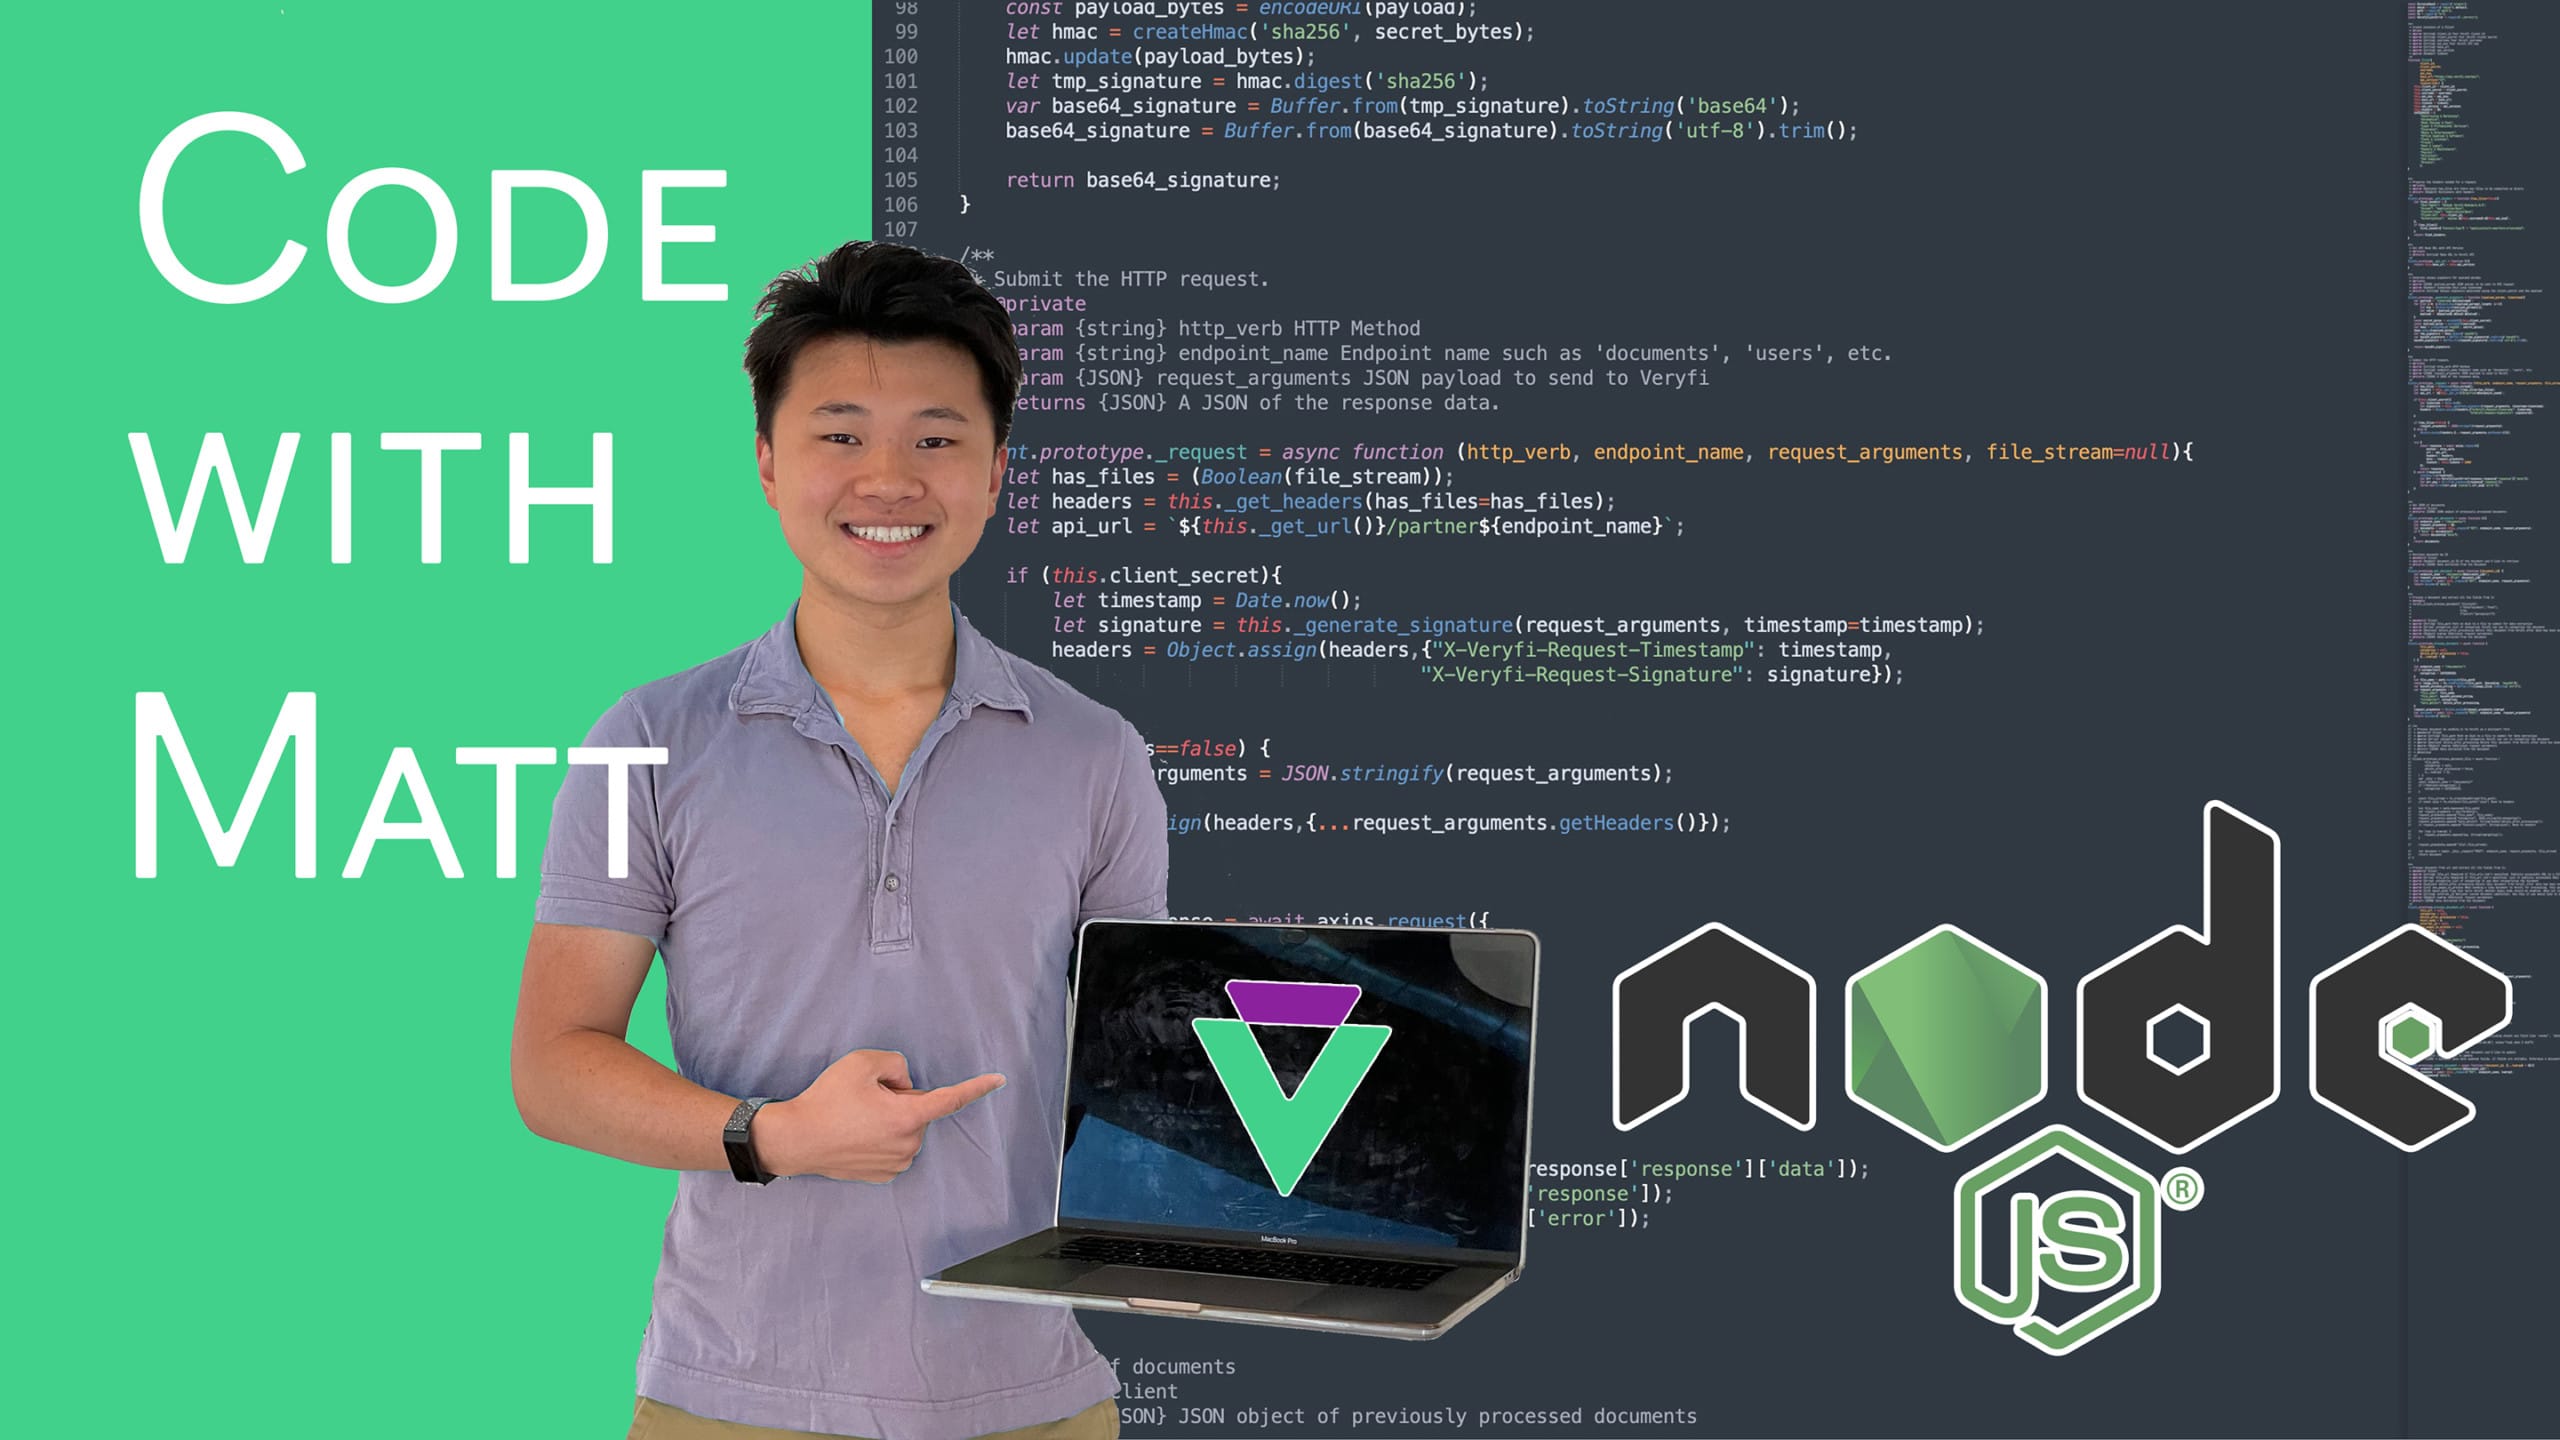 Code with Matt Node.JS